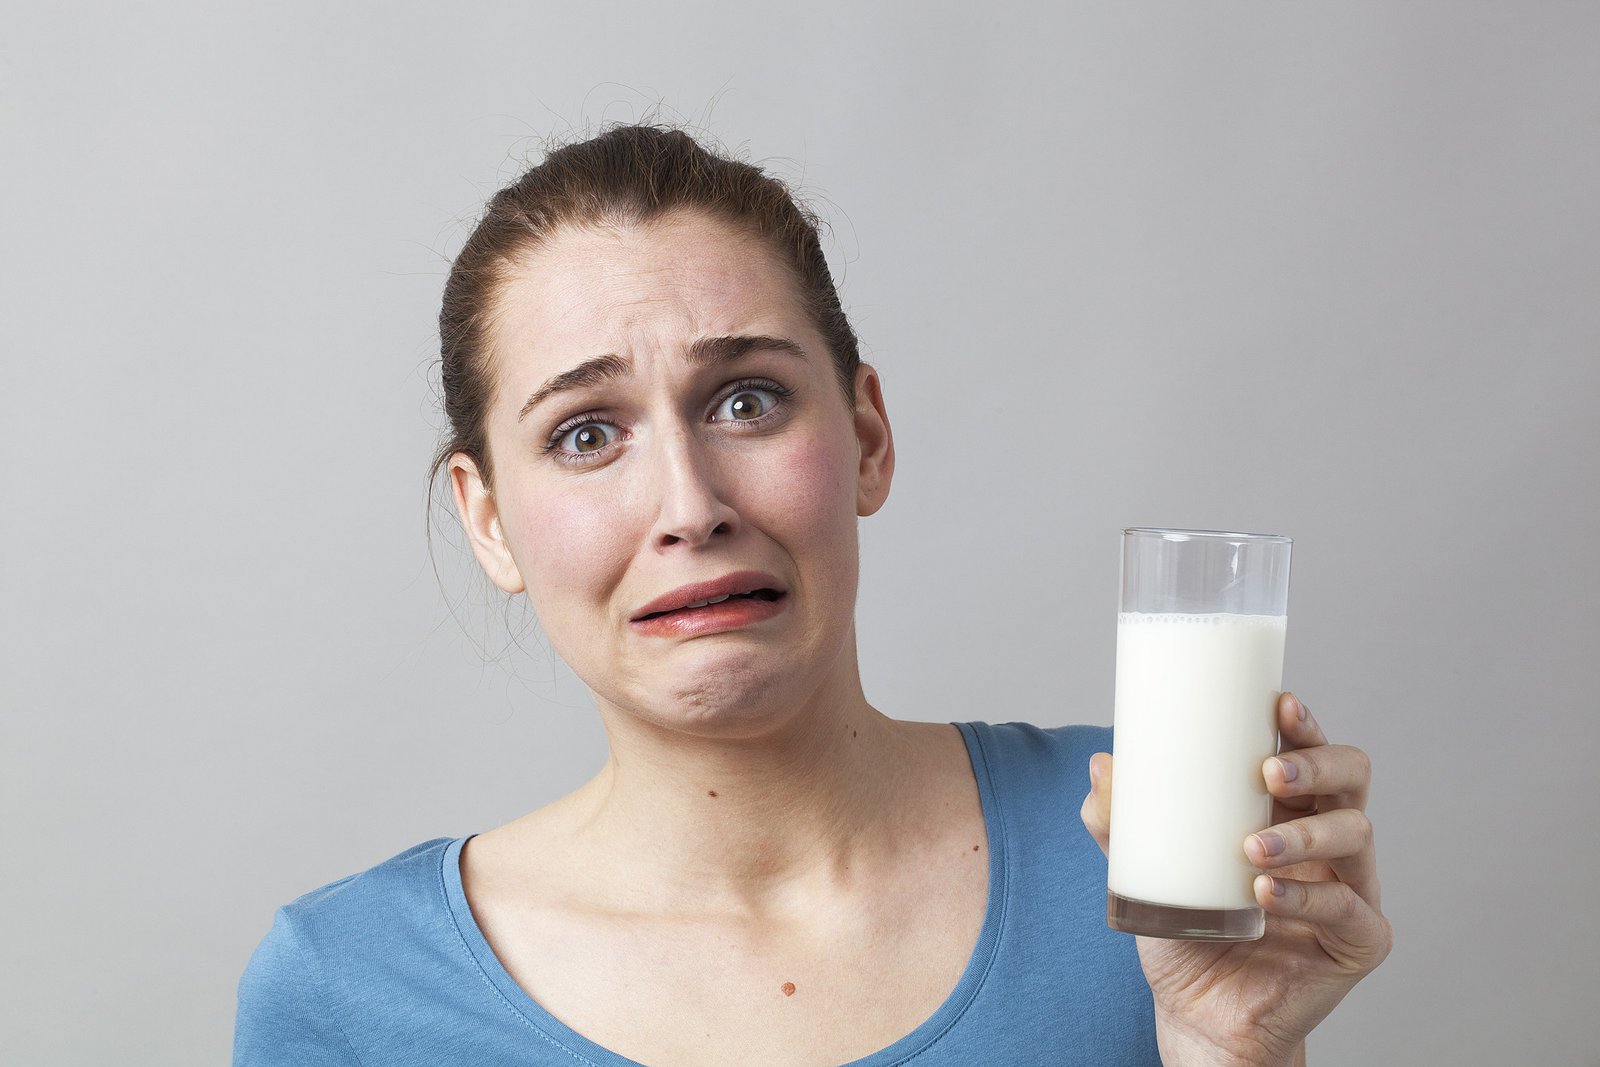 How Long Do Lactose Intolerance Symptoms Last?